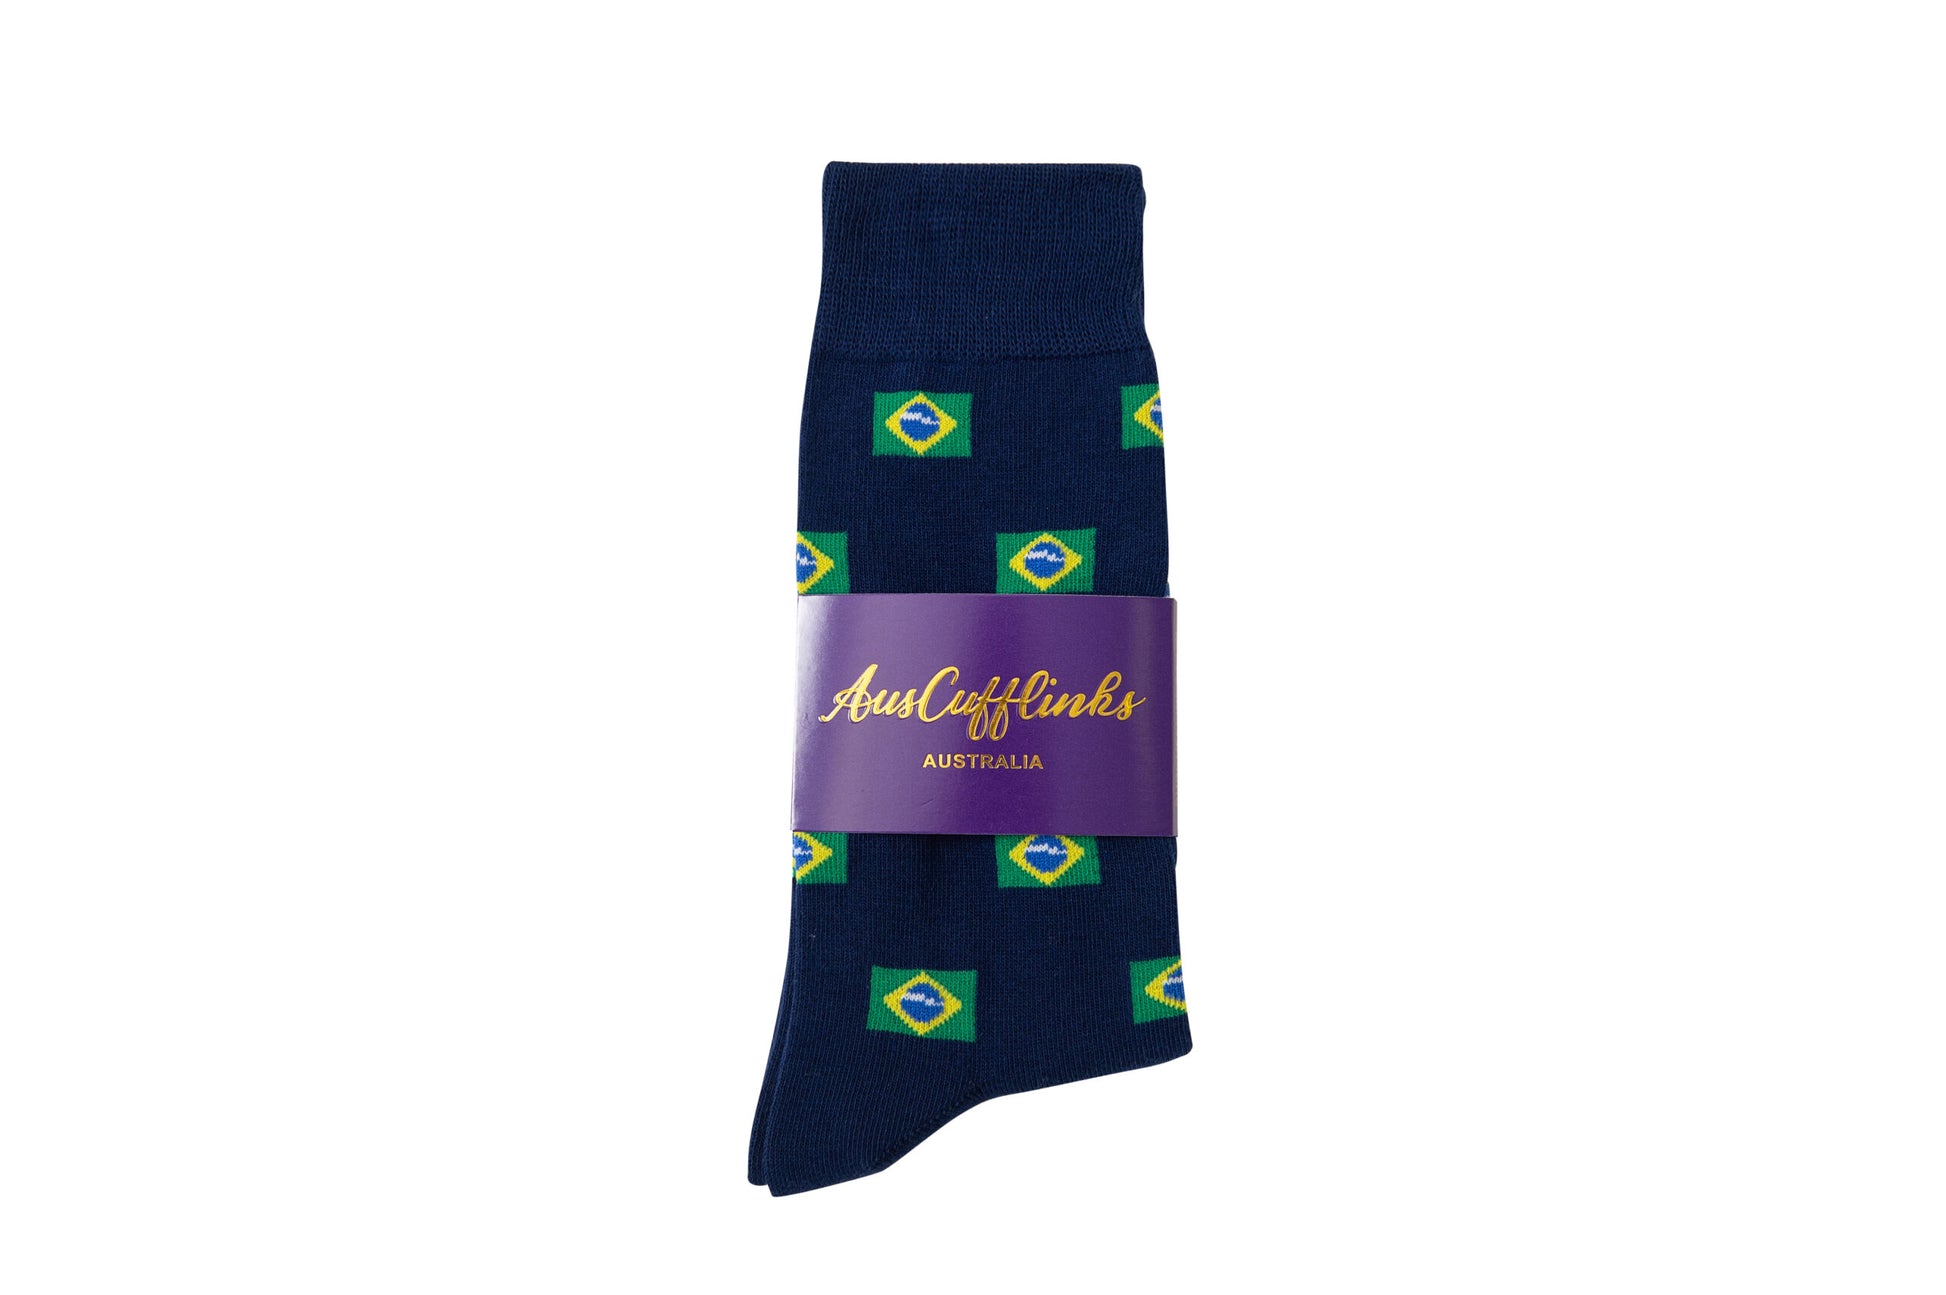 Brazil Flag-themed socks.